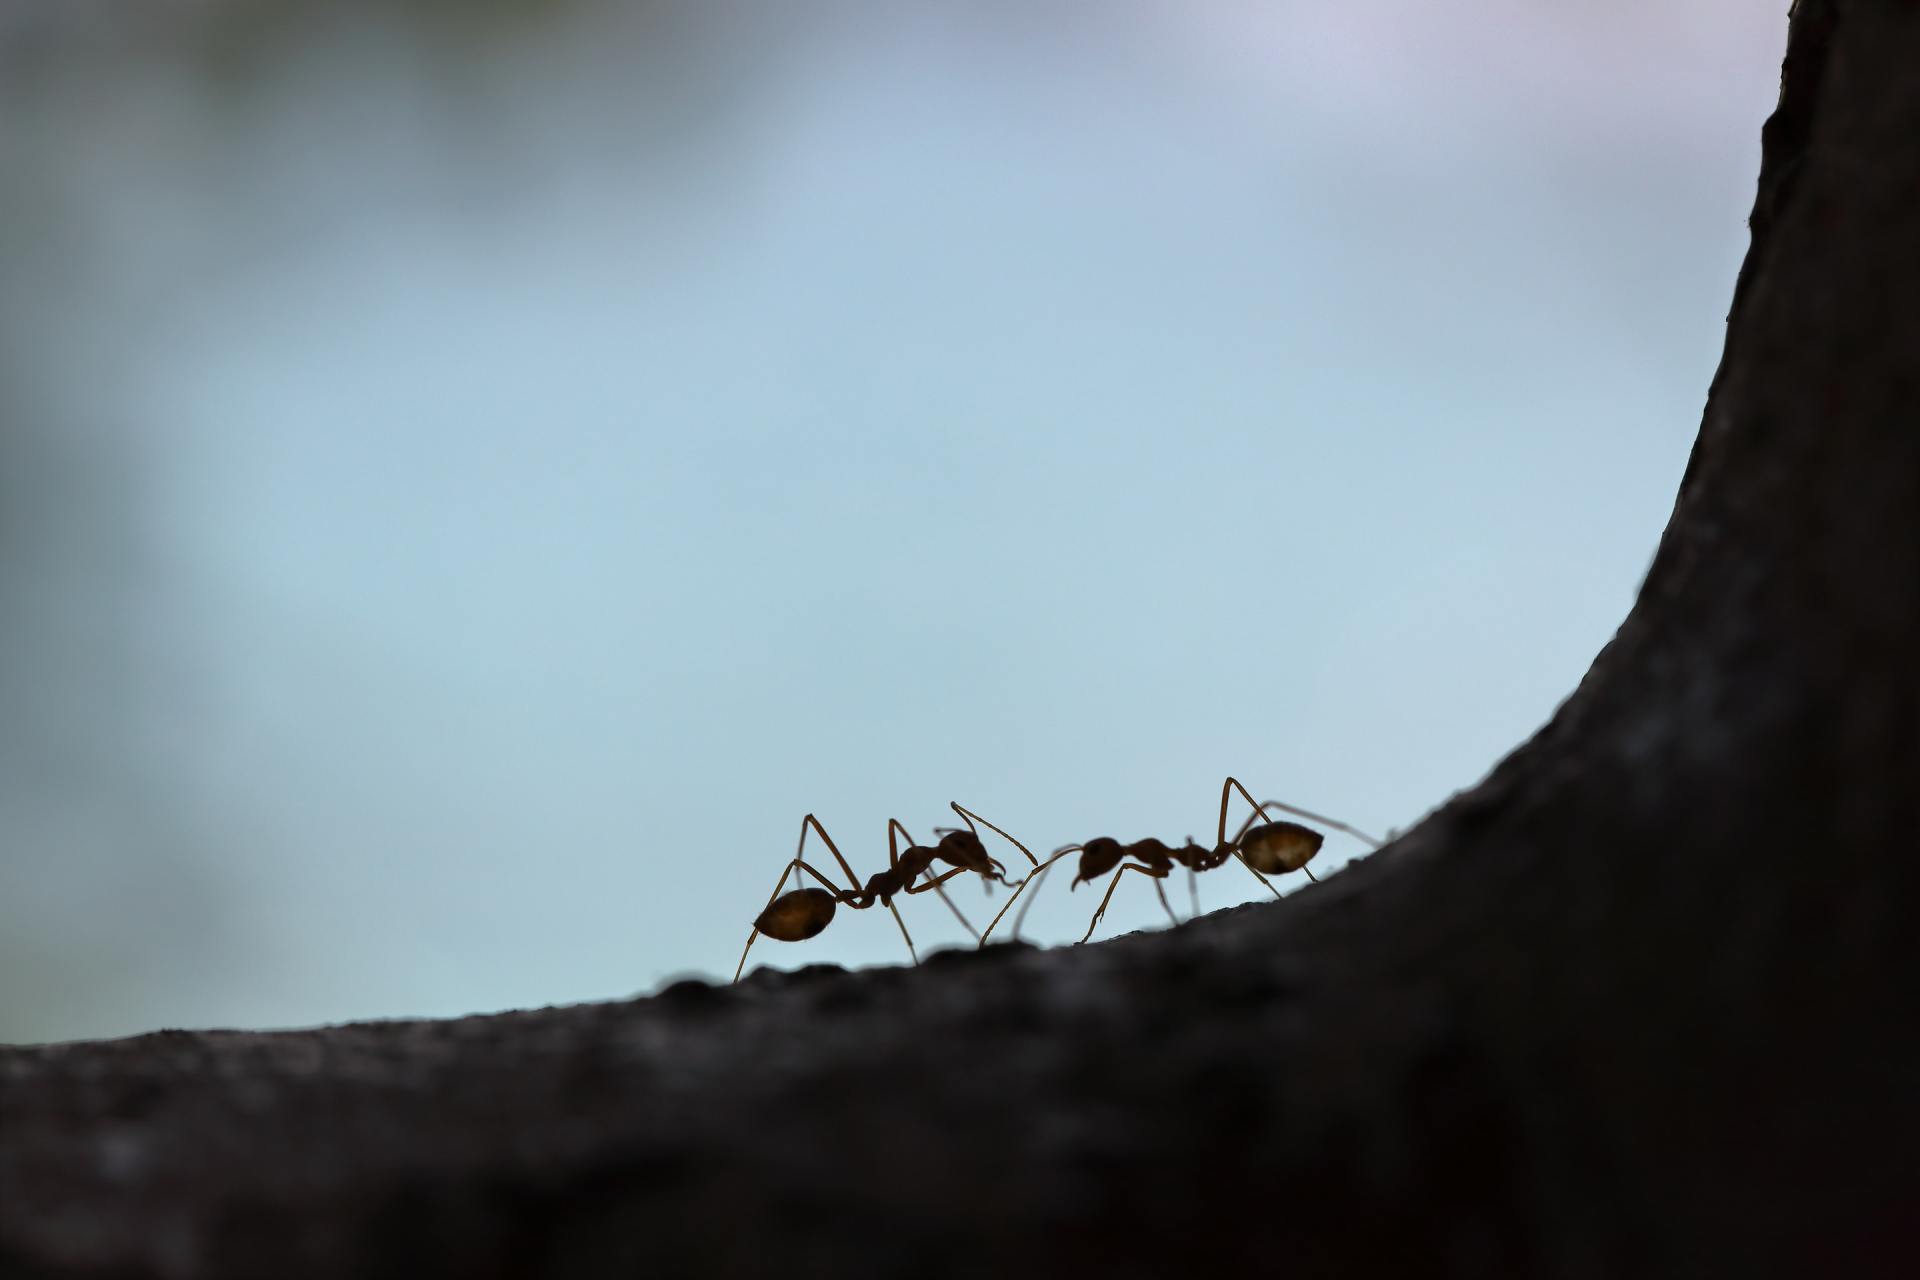 Ant Control for Buffalo, Amherst, Tonawanda & Cheektowaga, NY